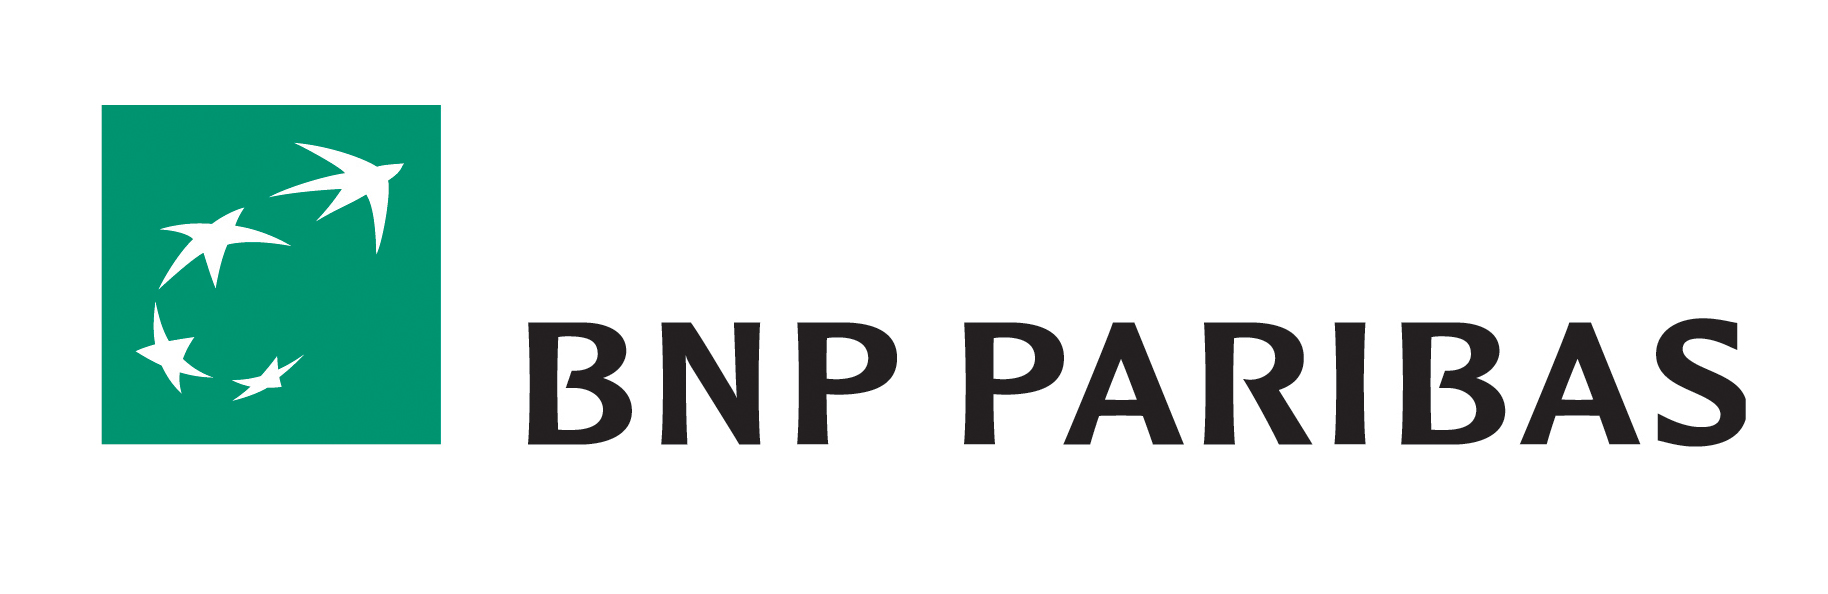 Working virtually with BNP Paribas